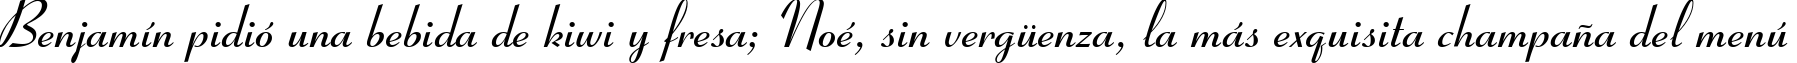 Пример написания шрифтом Ribbon 131 Bold BT текста на испанском